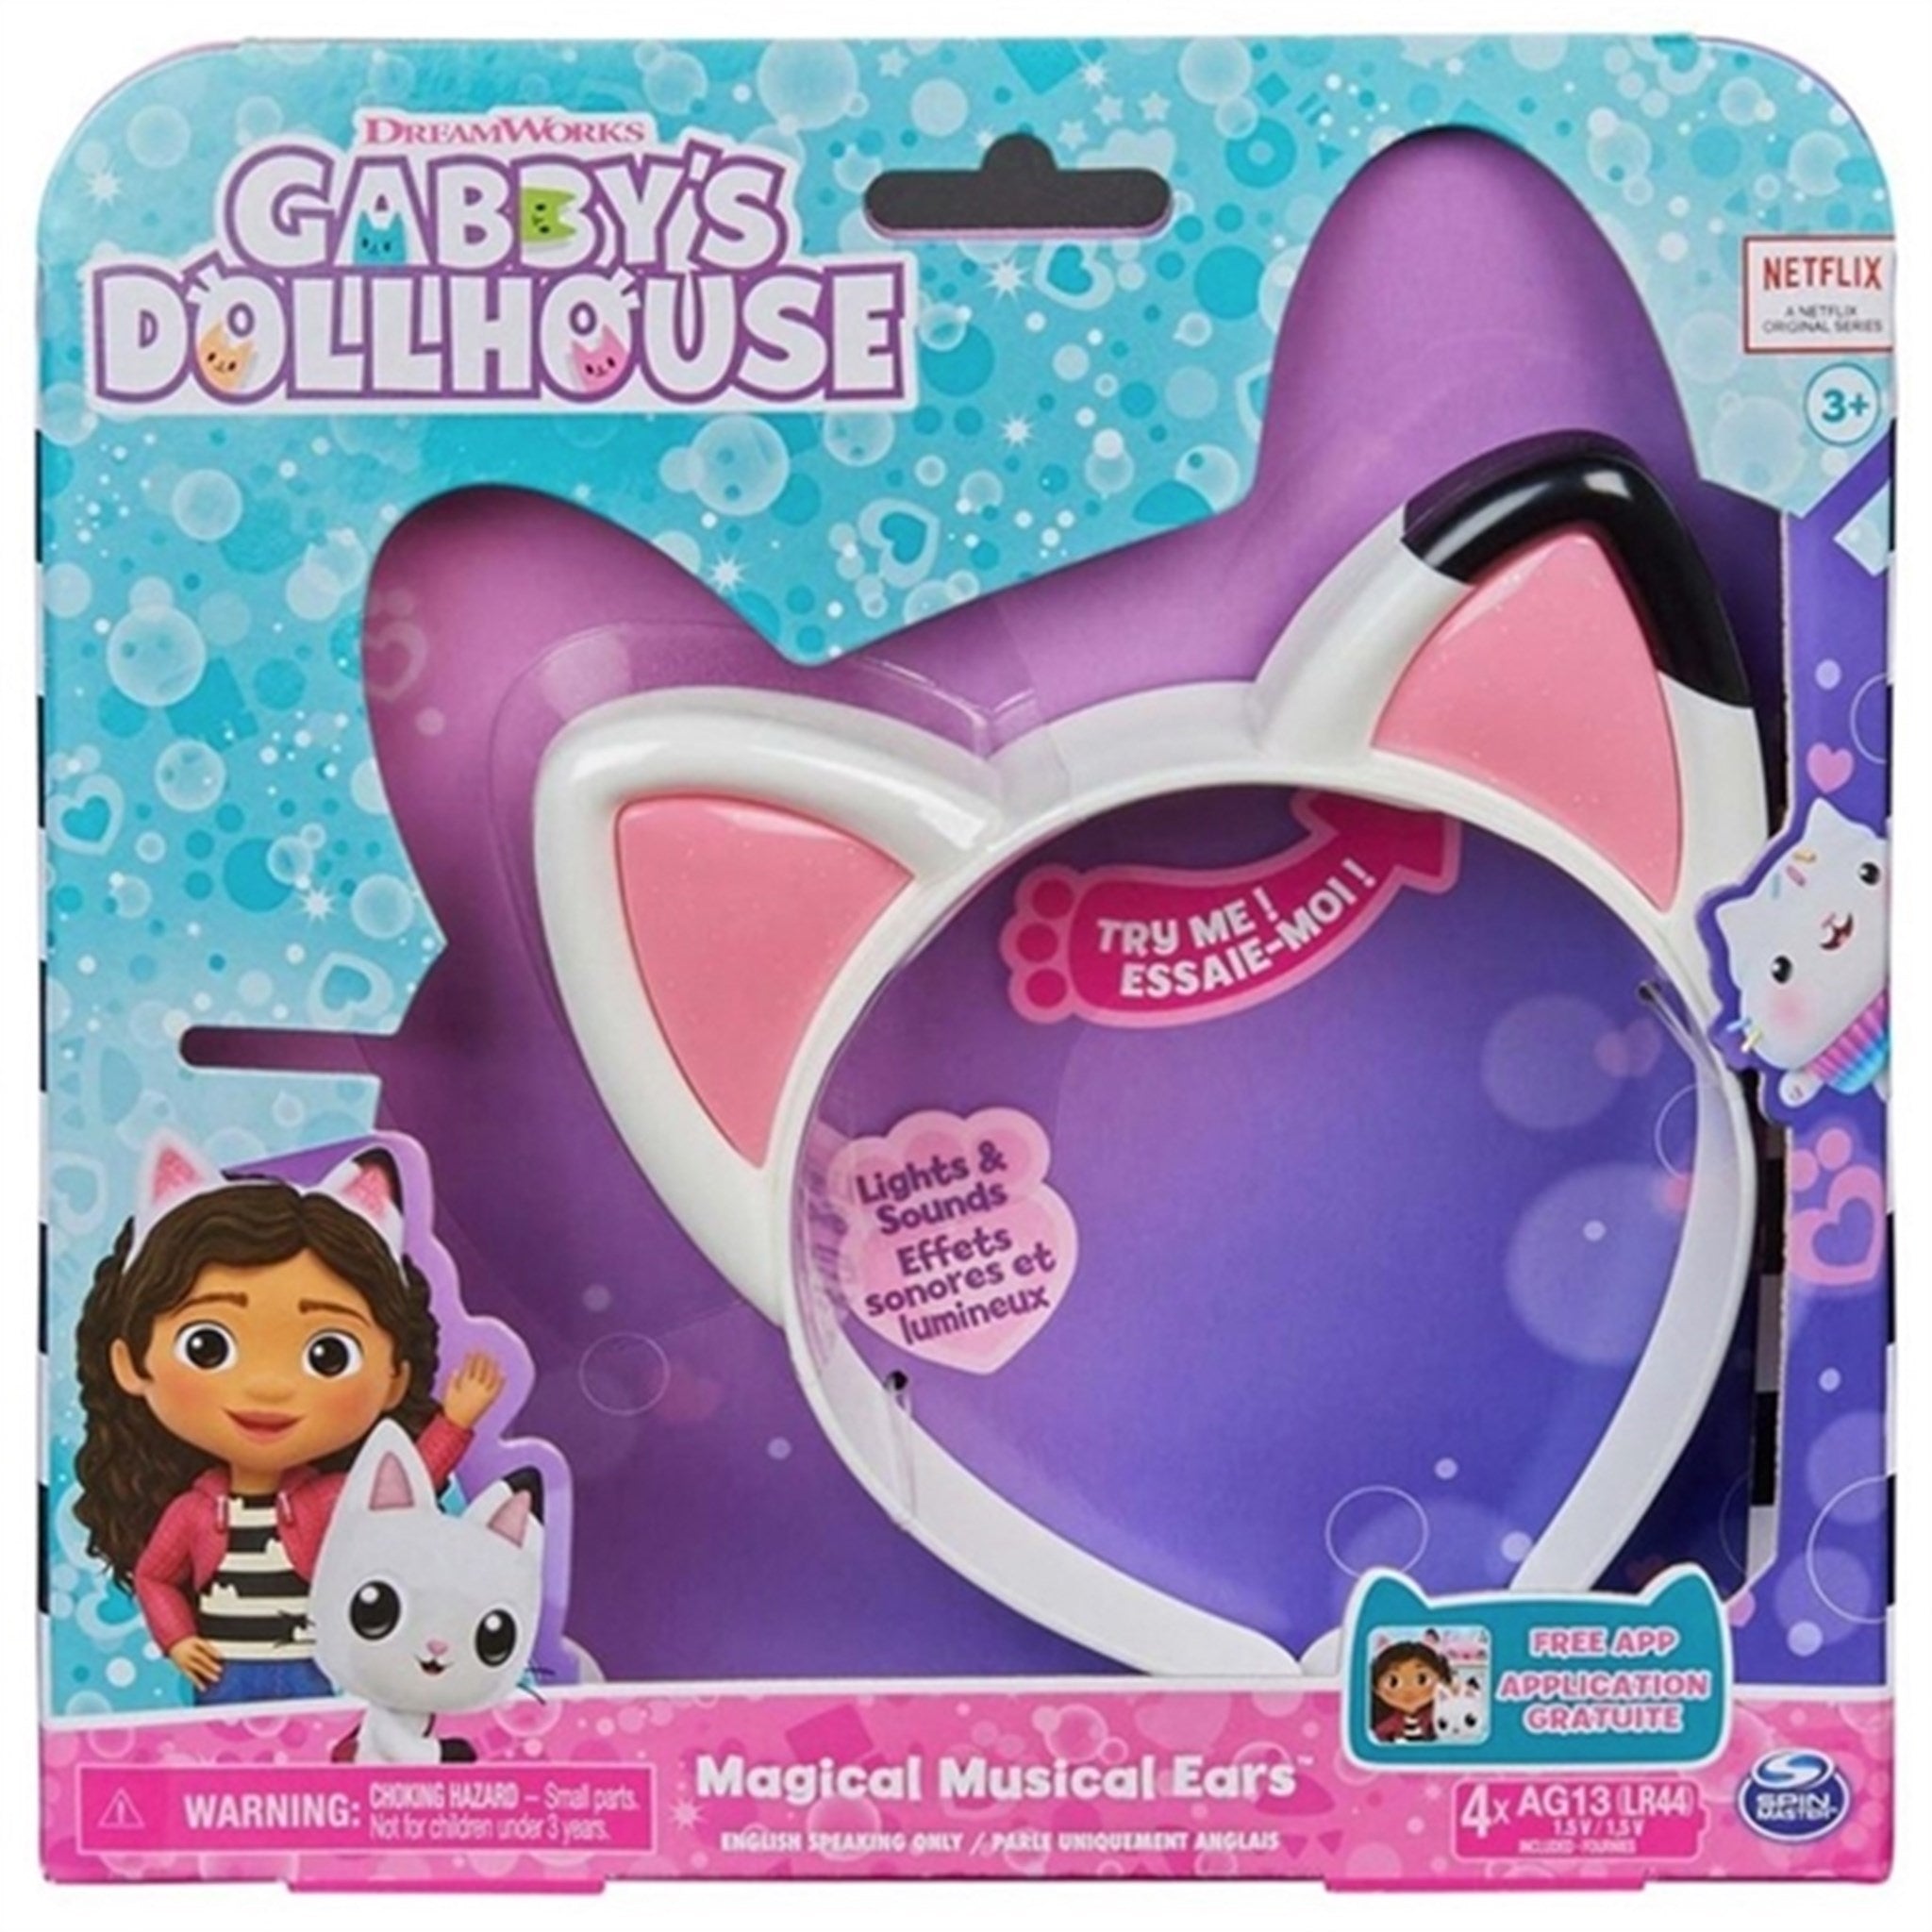 Gabby's Dollhouse - Magical Musical Ears 5